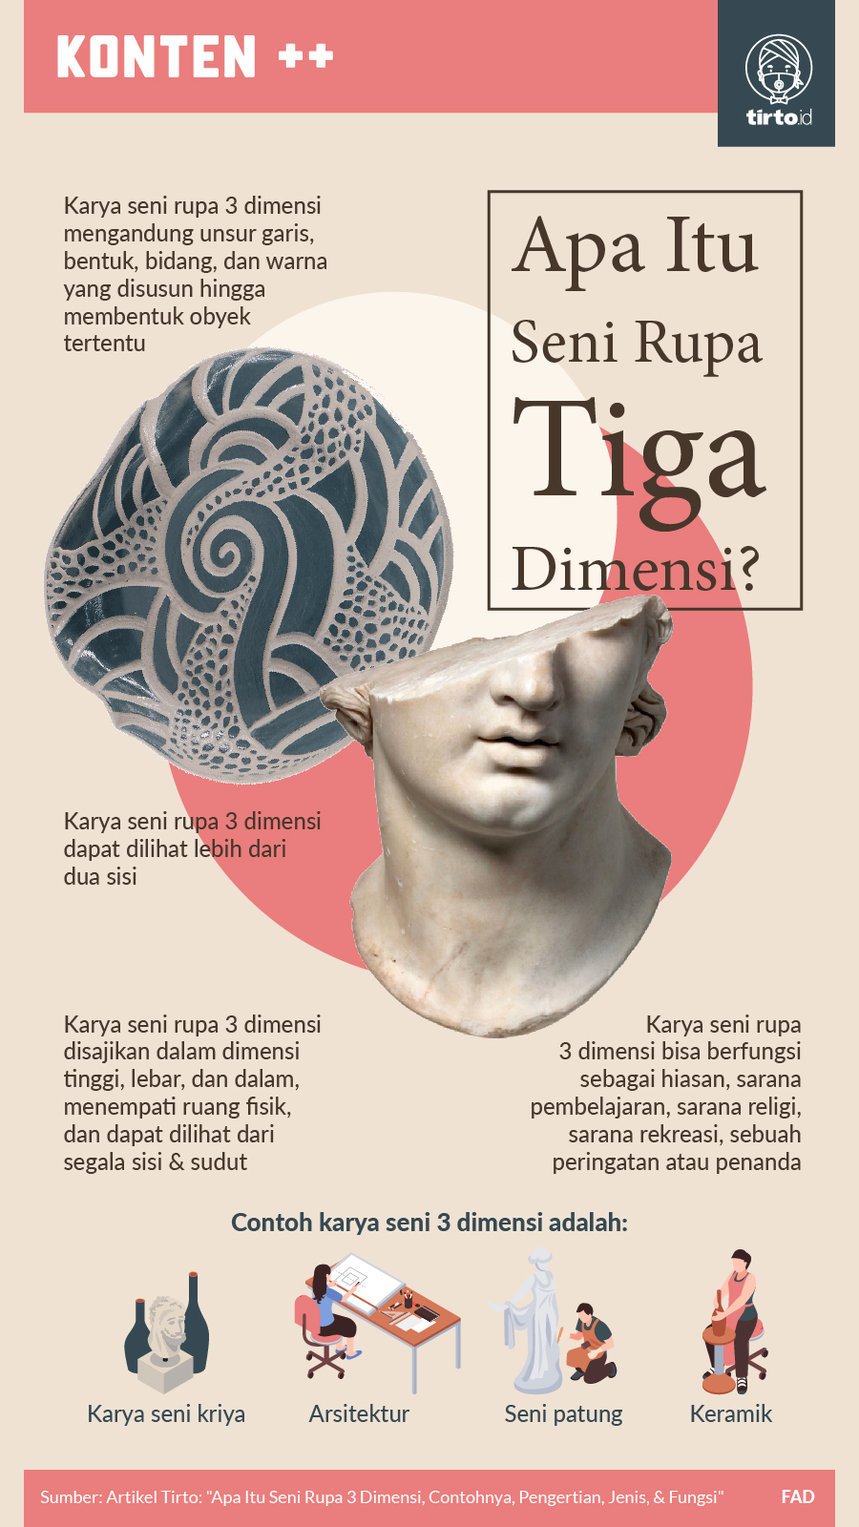 Yang relief di indonesia contoh karya berikan ada 16 Contoh